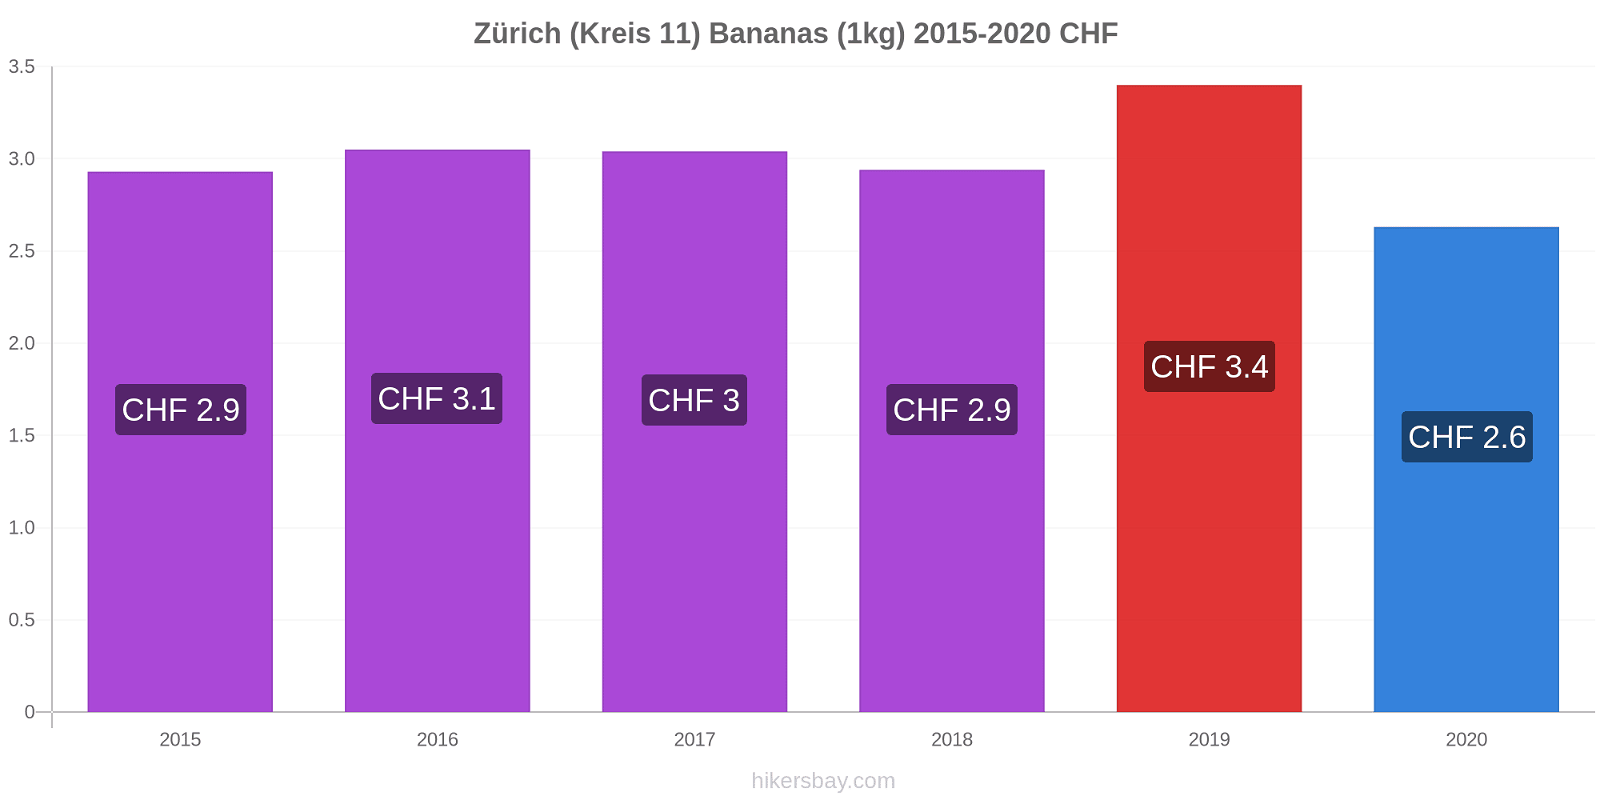 Zürich (Kreis 11) variação de preço Banana (1kg) hikersbay.com